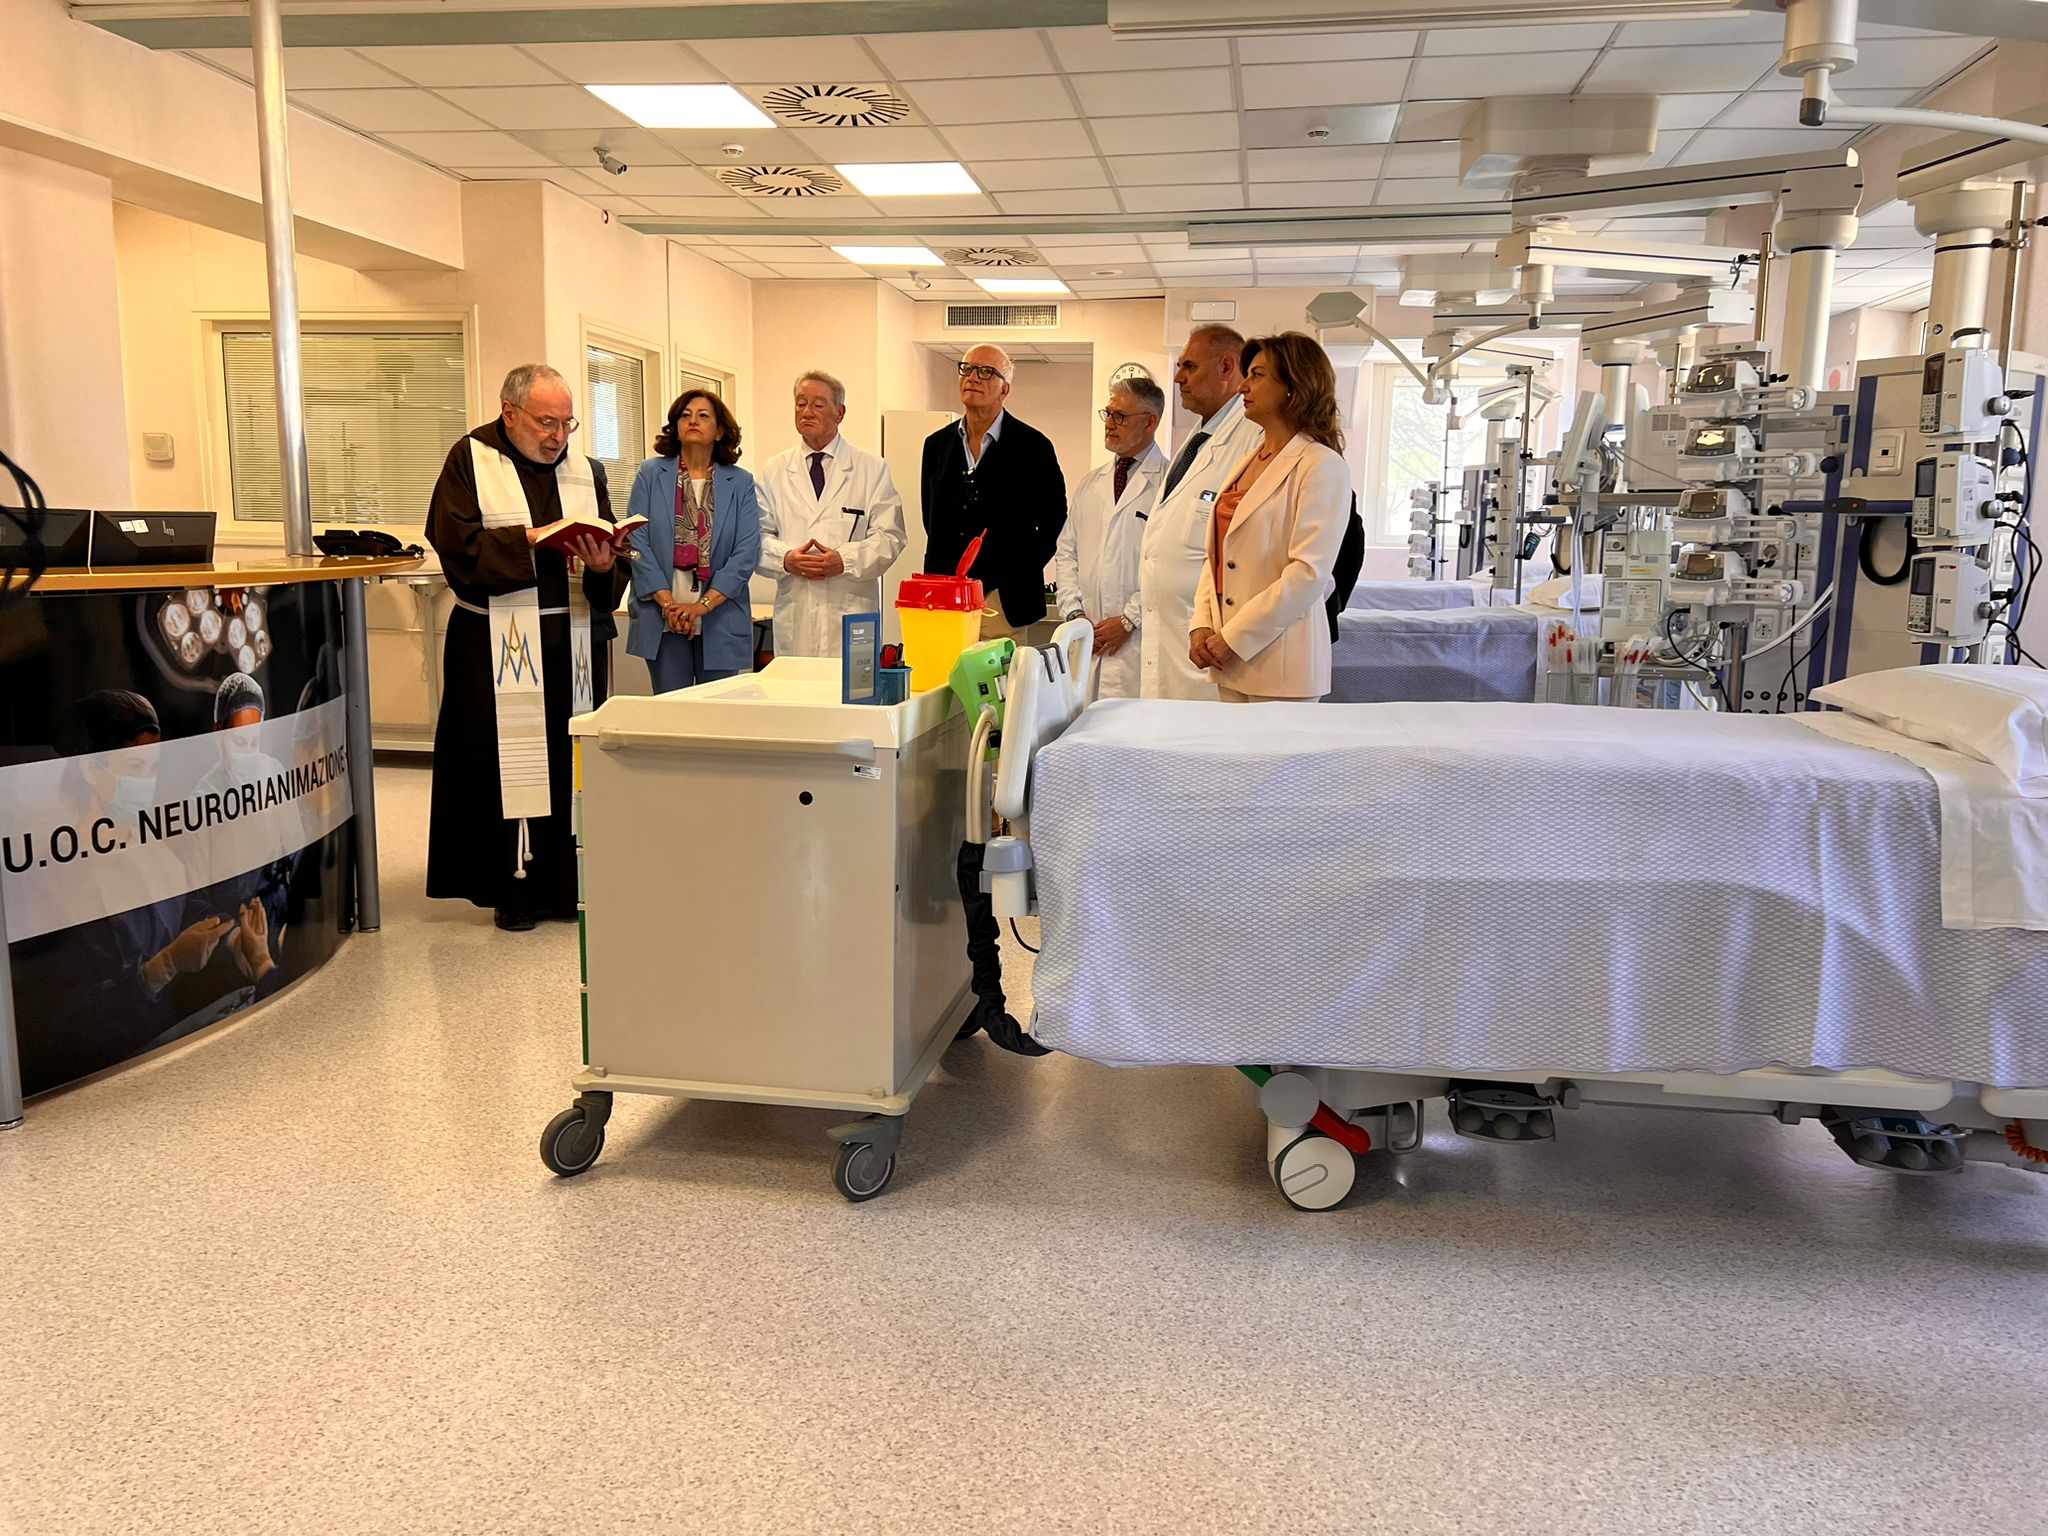 Ospedale “San Pio”, riapre il reparto di Neurorianimazione. Medici e direzione: “E’ una giornata speciale”